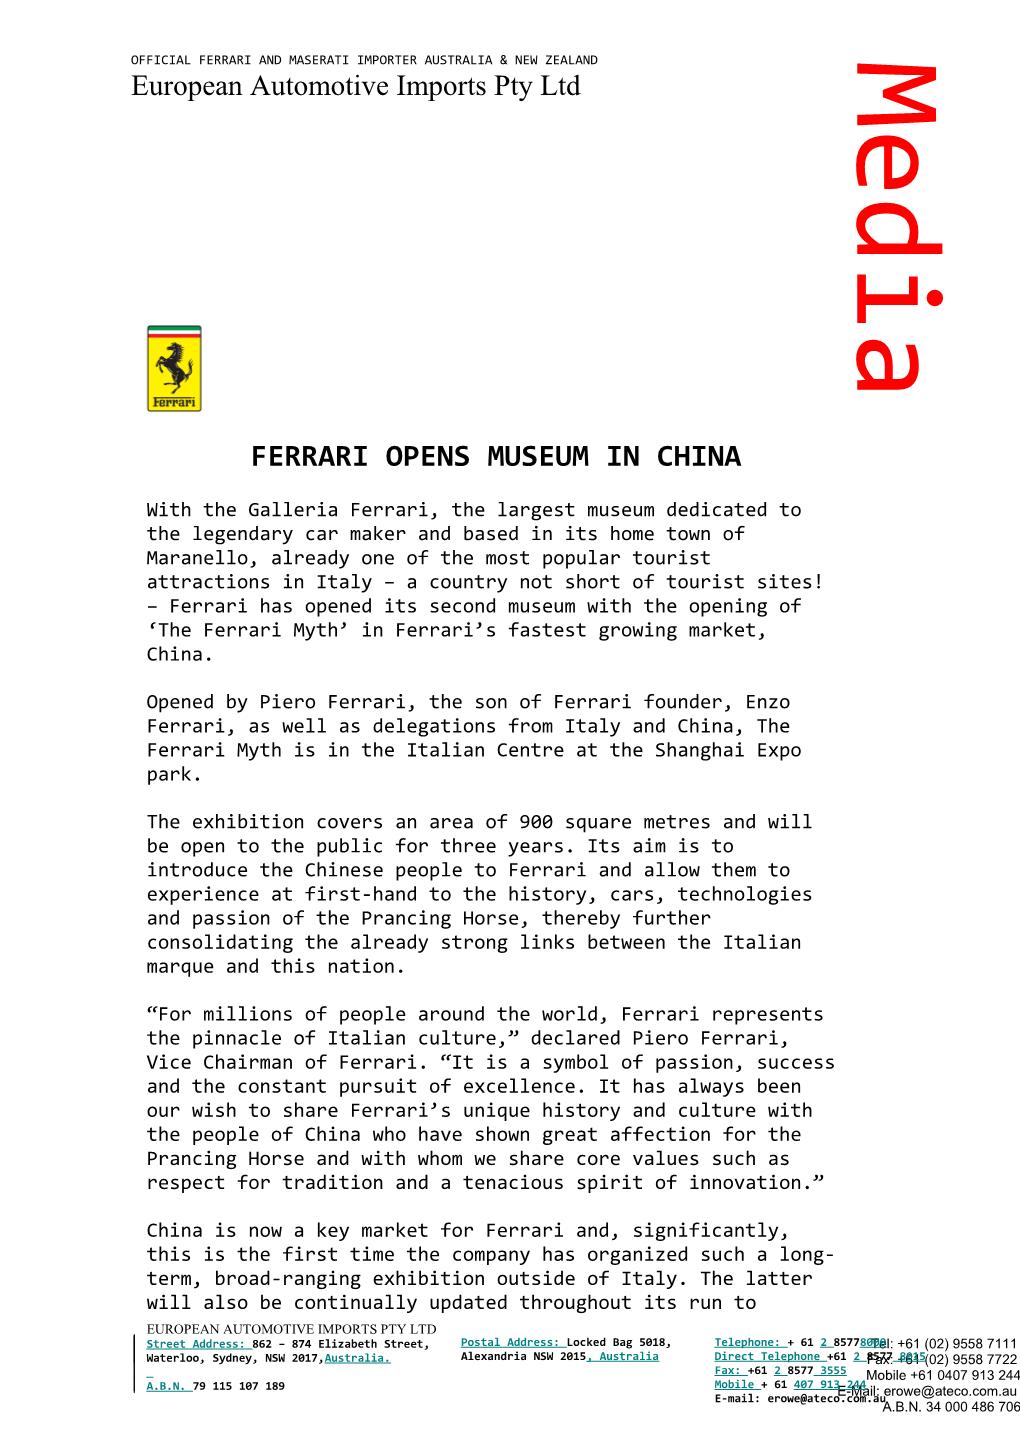 Ferrari Opens Museum in China